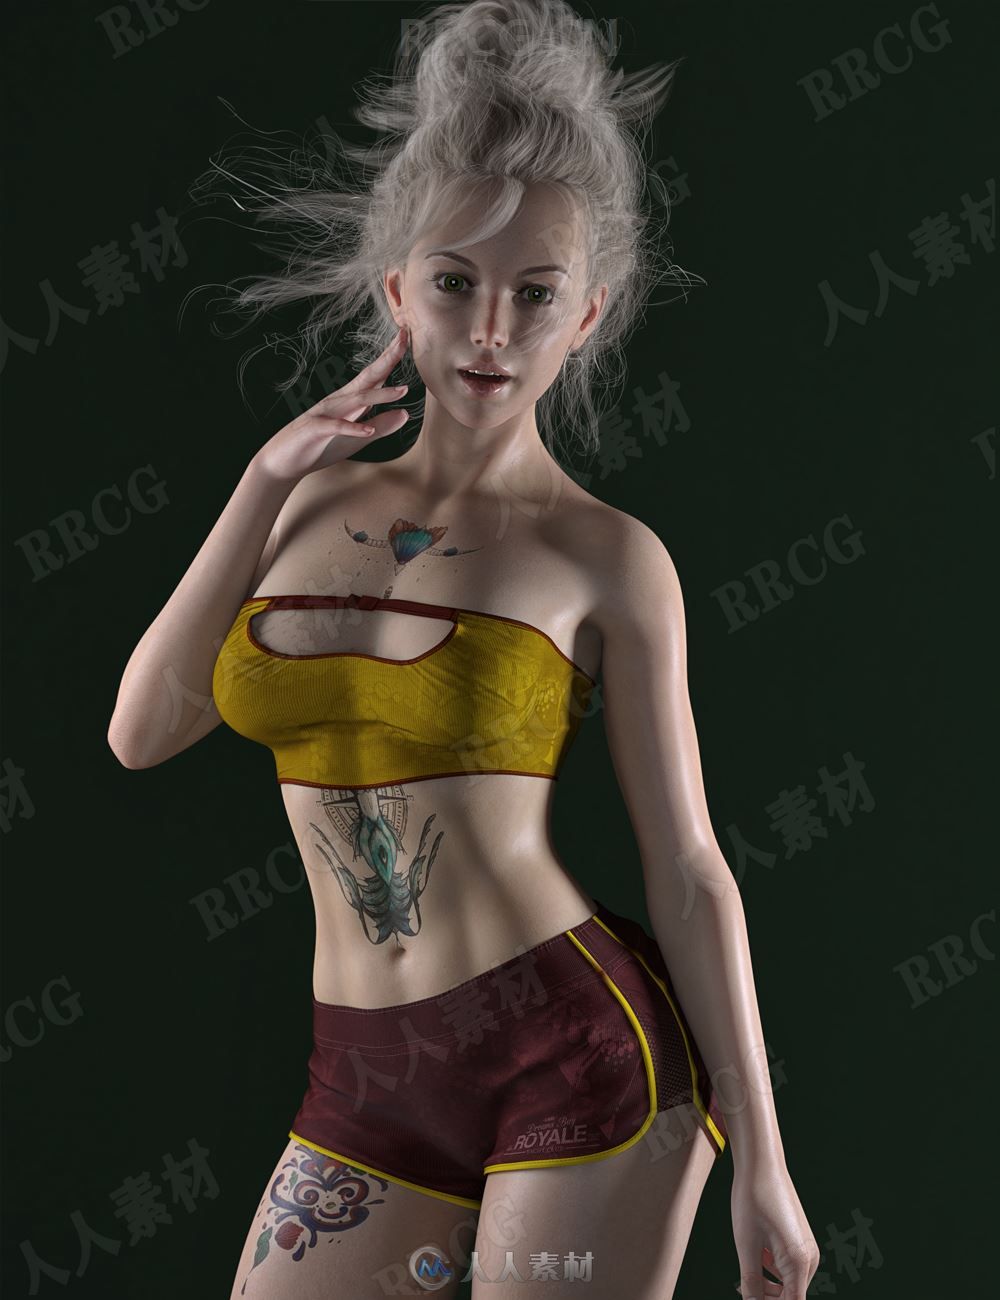 美丽年轻带有个性纹身女性3D模型合集